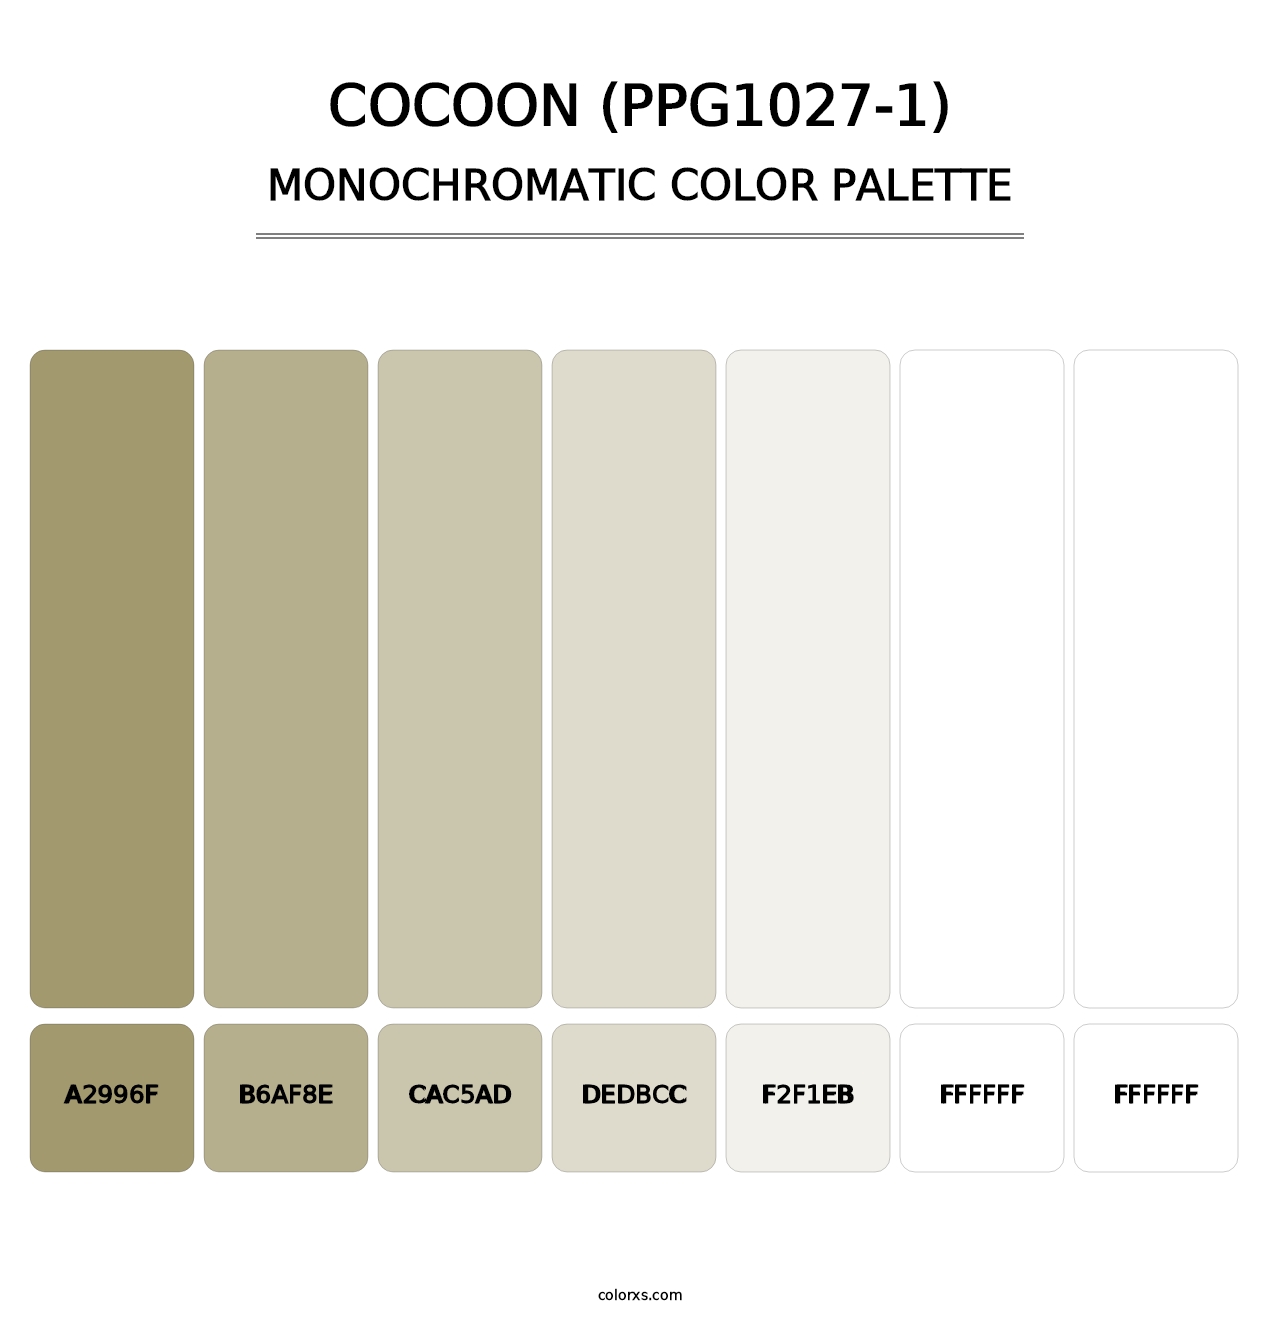 Cocoon (PPG1027-1) - Monochromatic Color Palette